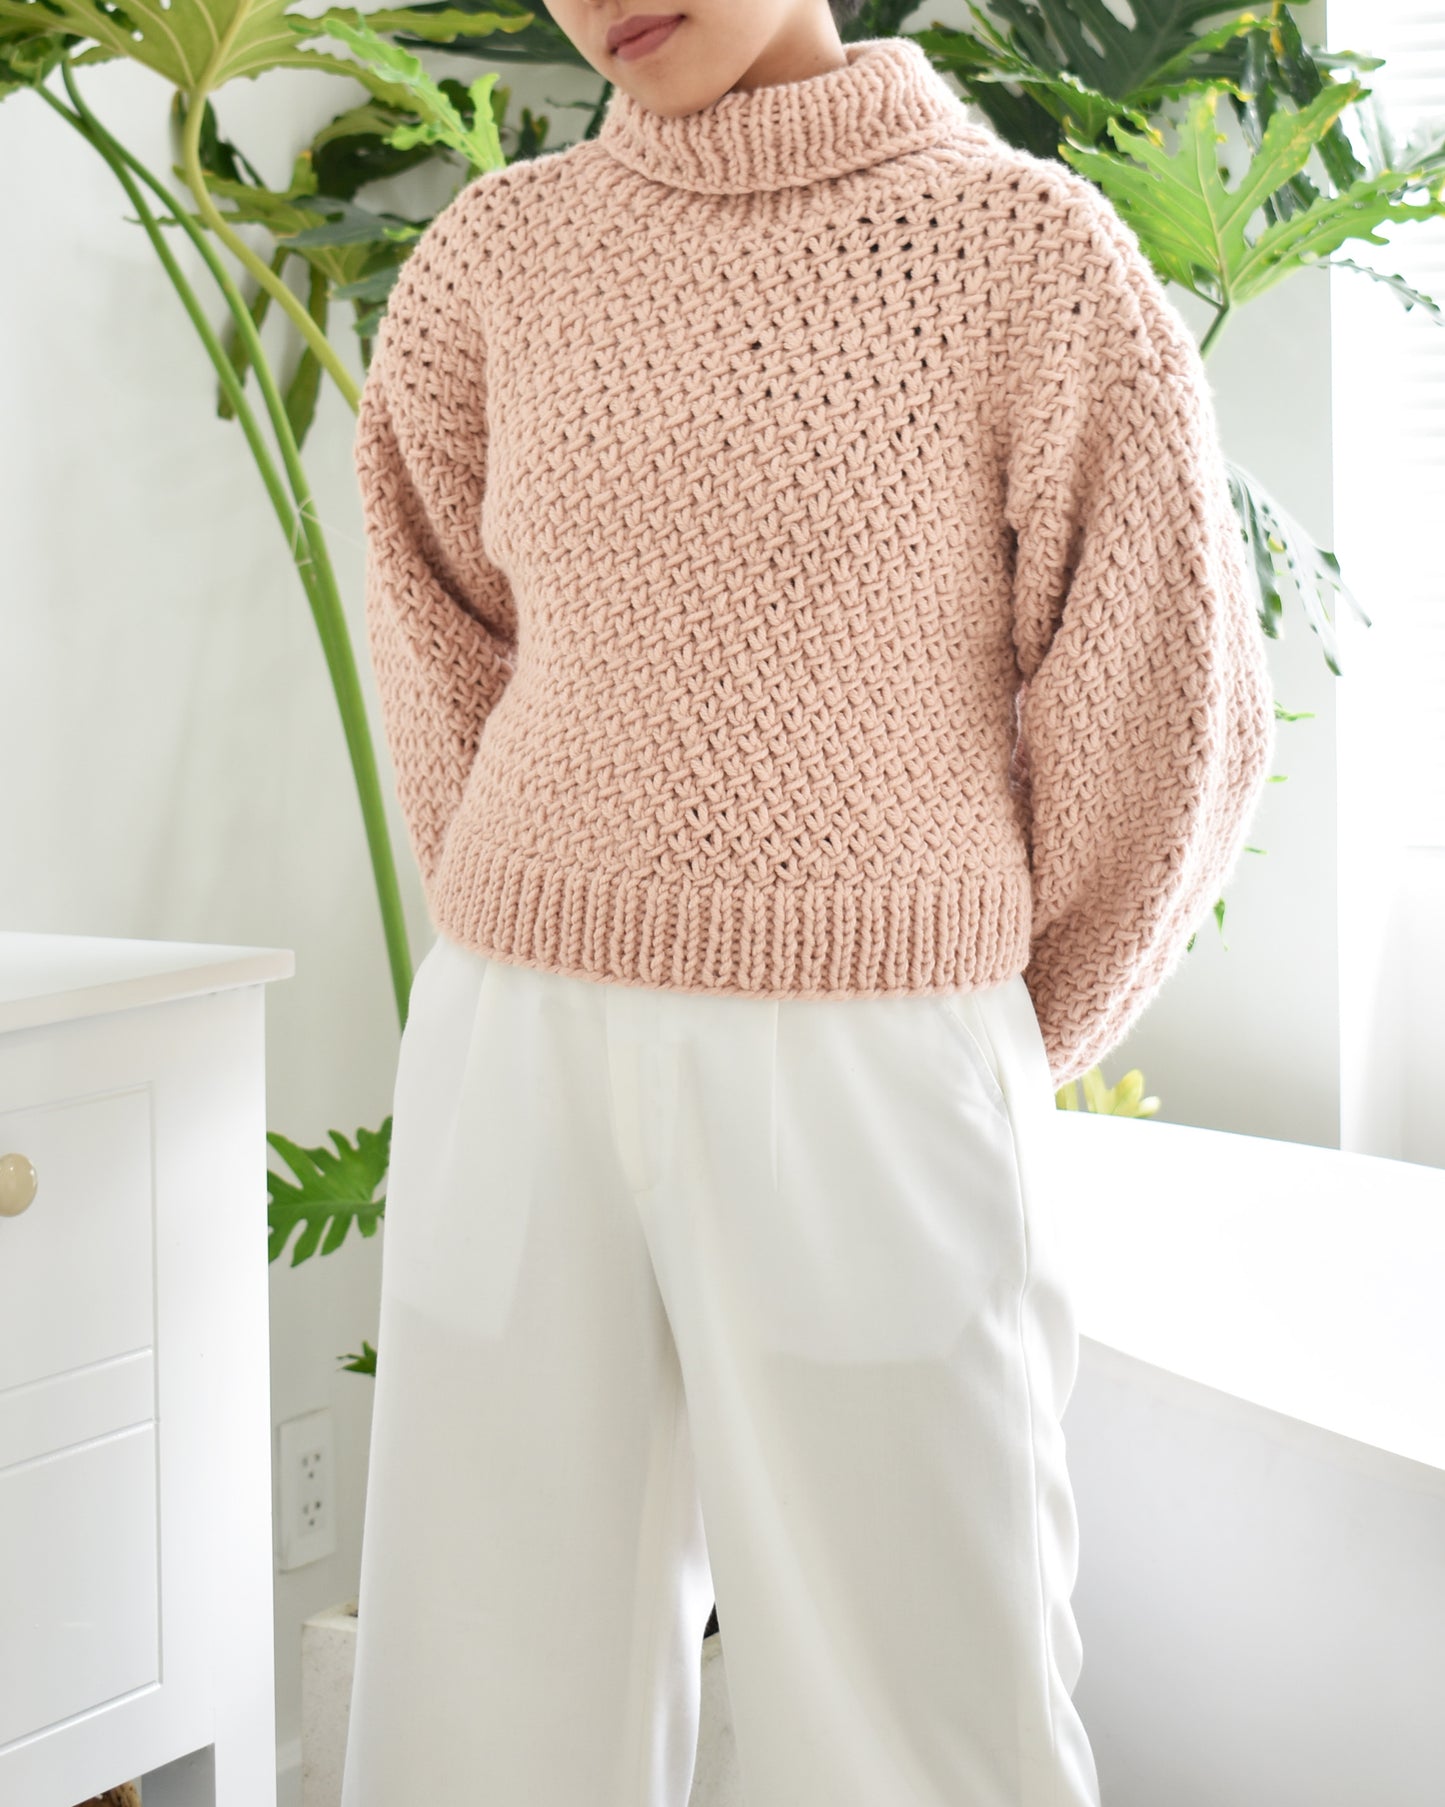 Sweater No.12 | Knitting chunky sweater pattern